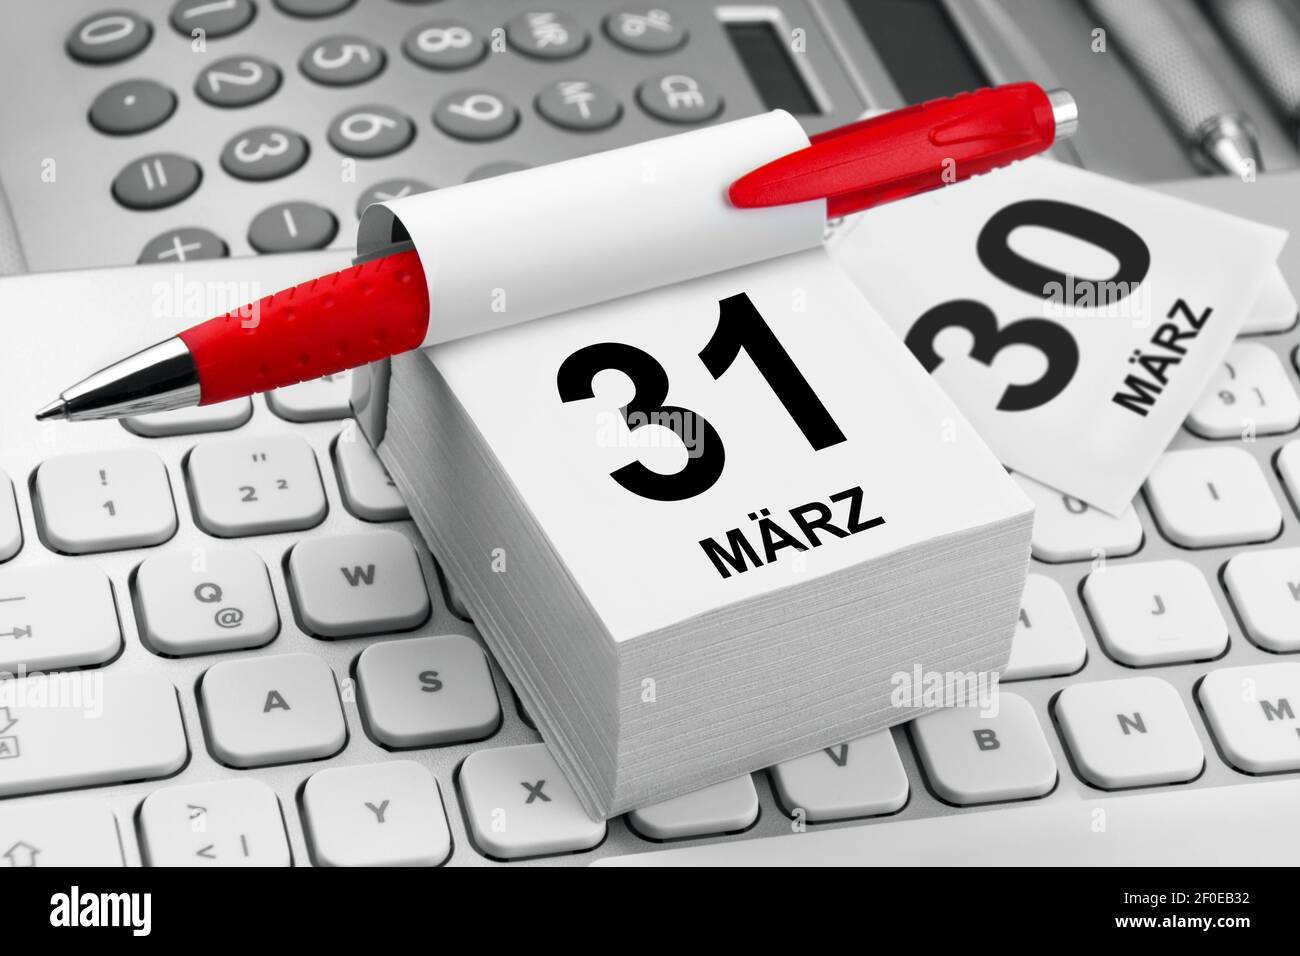 Kalender 31. März und PC Keyboard Nahaufnahme Stock Photo